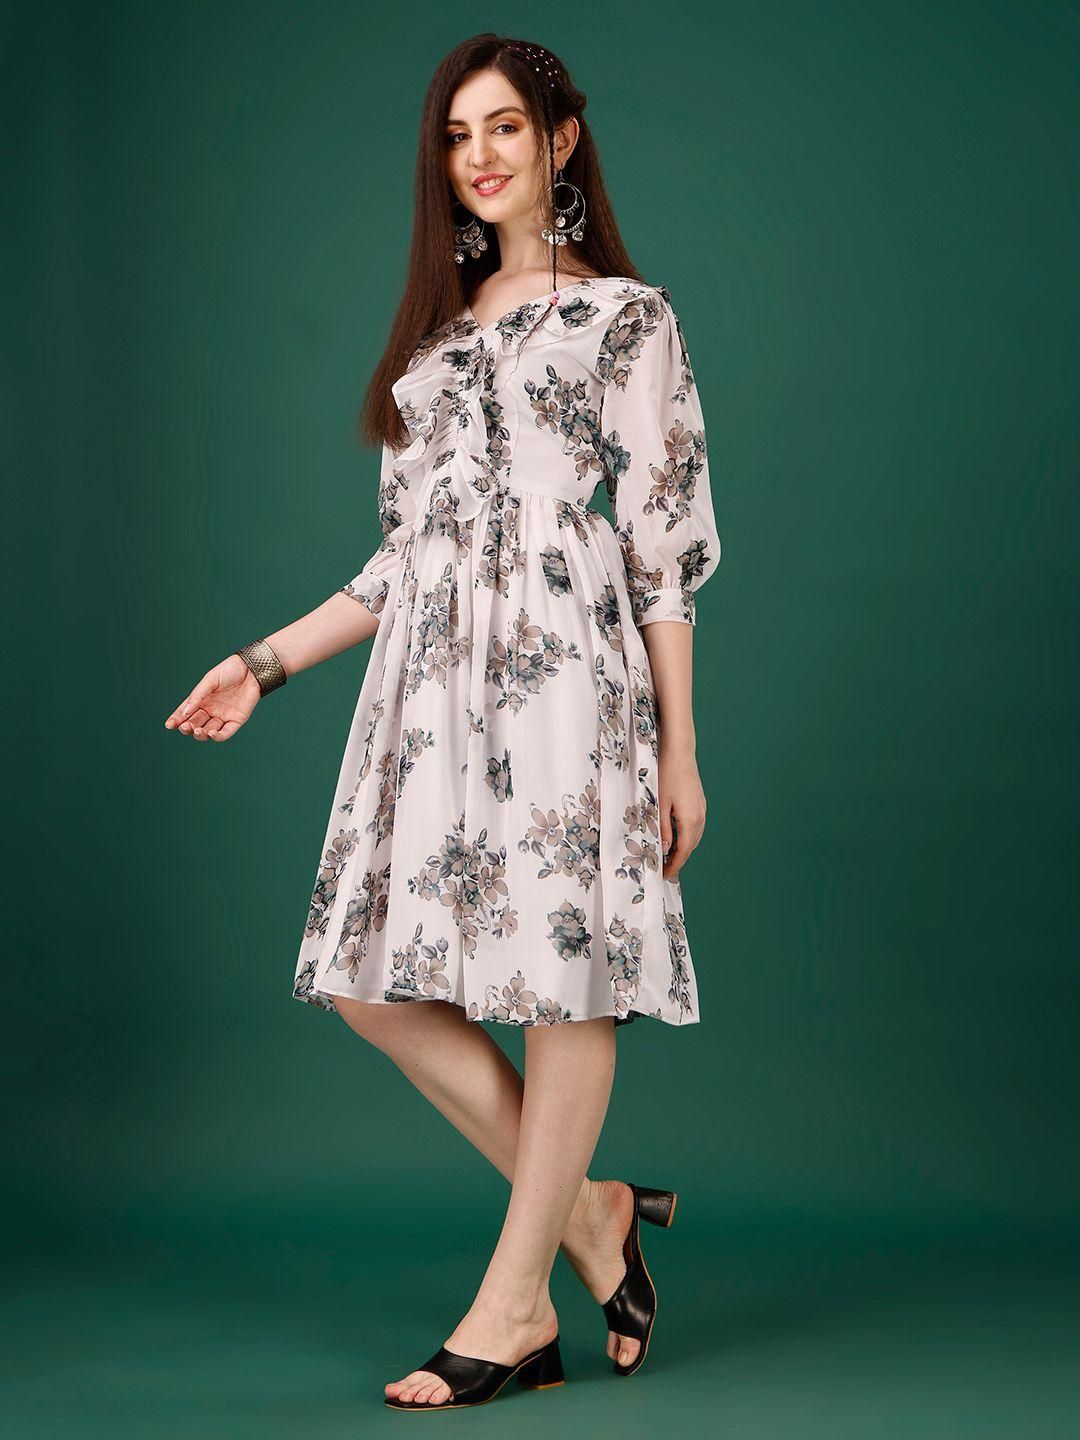 प्लस साइज़ महिलाओं के लिए जॉर्जेट फ्लोरल प्रिंट फ्लेयर्ड शॉर्ट ड्रेस